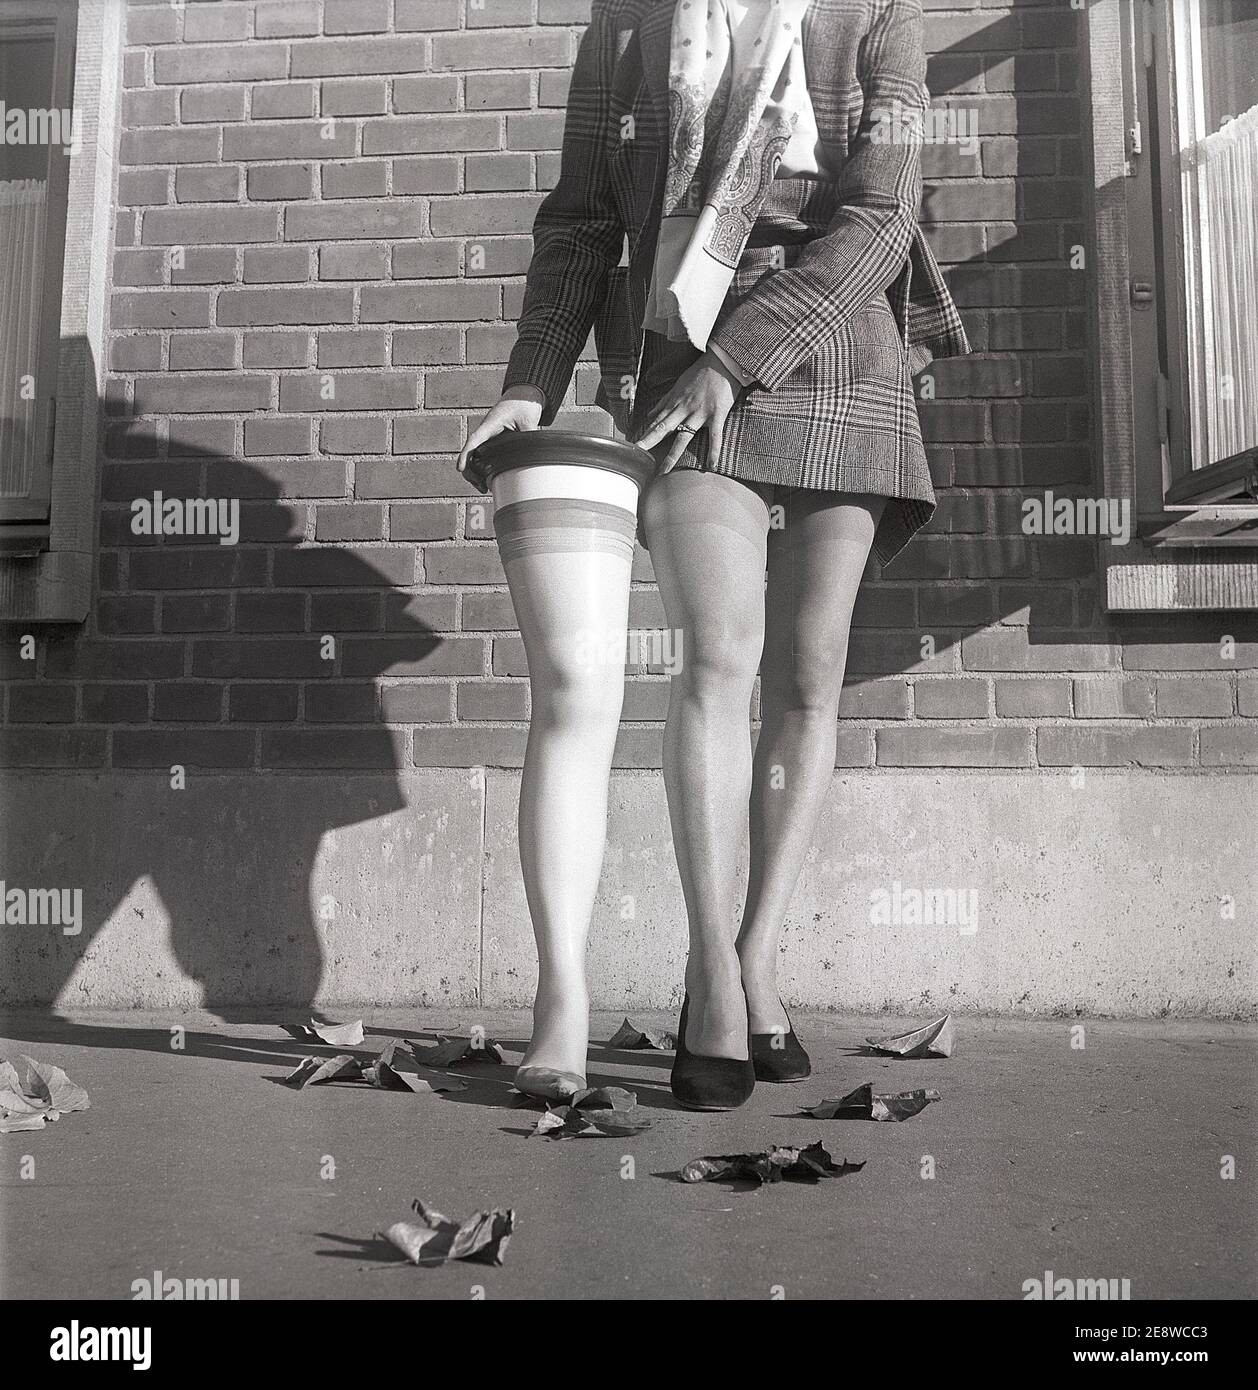 Bas en nylon dans les années 1950. Si vous vous êtes jamais demandé comment la forme et la taille des bas de nylon a été décidé: Ici, le prototype de jambe de femme dans la taille moyenne établie par une mesure de 10 000 jambes américaines de femmes. Le modèle Solveij Nyhlén photographié à l'extérieur de l'usine suédoise de bas en nylon, Malmö strumpfabrik. Fondé en 1926 et devenu le premier fabricant de bas de soie en suède. À ce moment-là 1951, la compagnie avait investi dans de nouvelles machines pour fabriquer les bas en nylon populaires. Réf. BE19-8 Banque D'Images